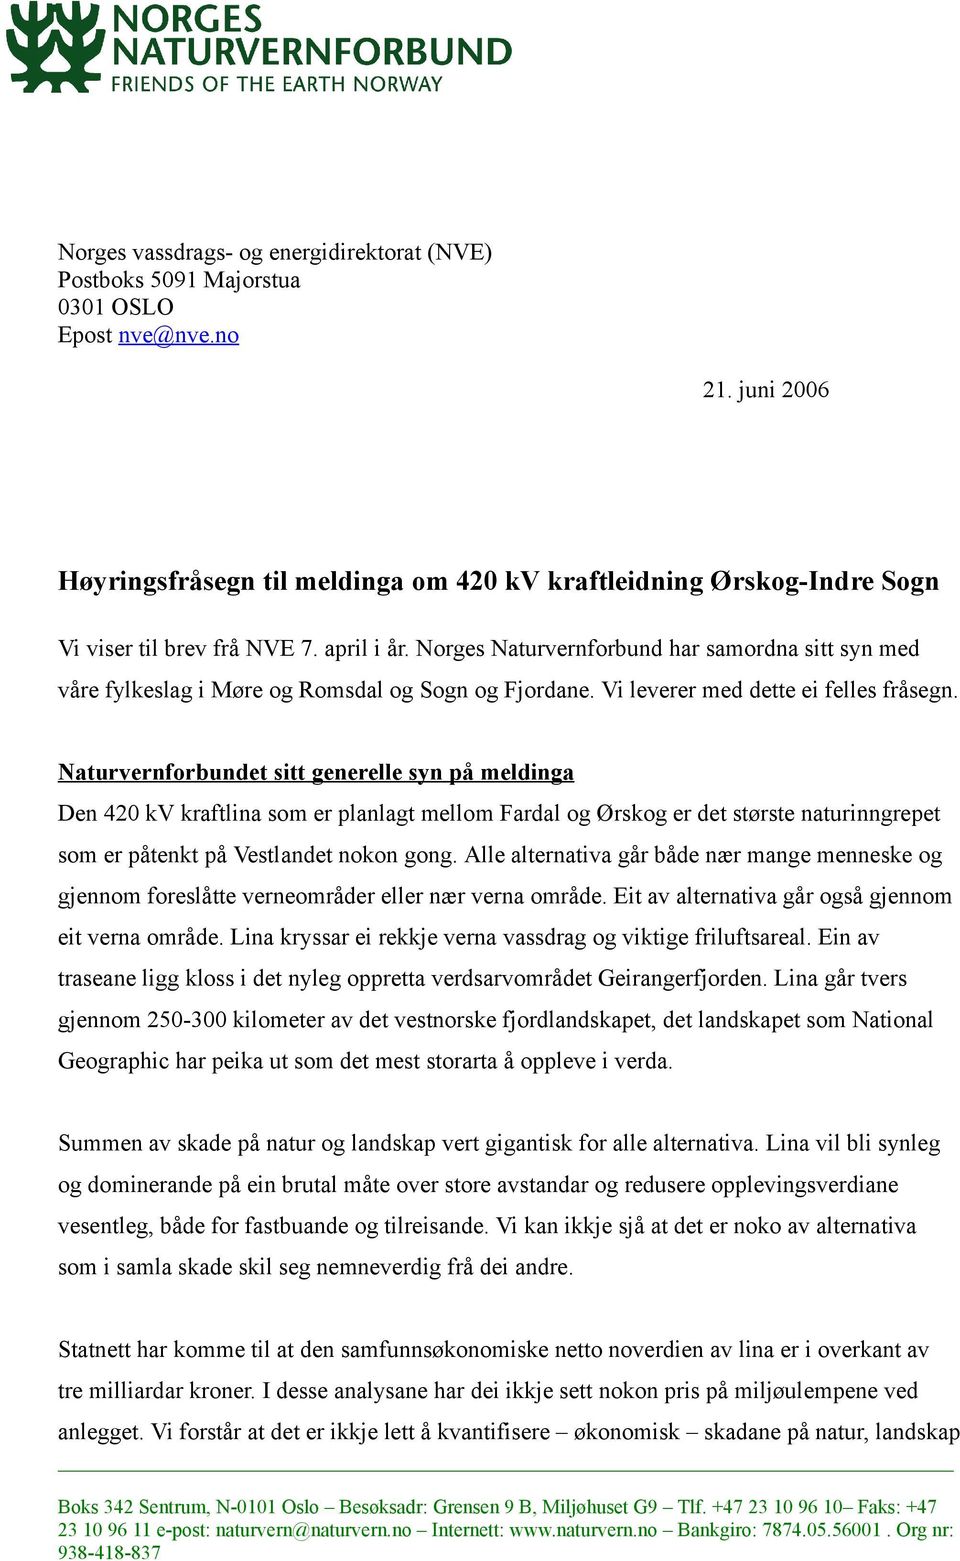 Norges Naturvernforbund har samordna sitt syn med våre fylkeslag i Møre og Romsdal og Sogn og Fjordane. Vi leverer med dette ei felles fråsegn.